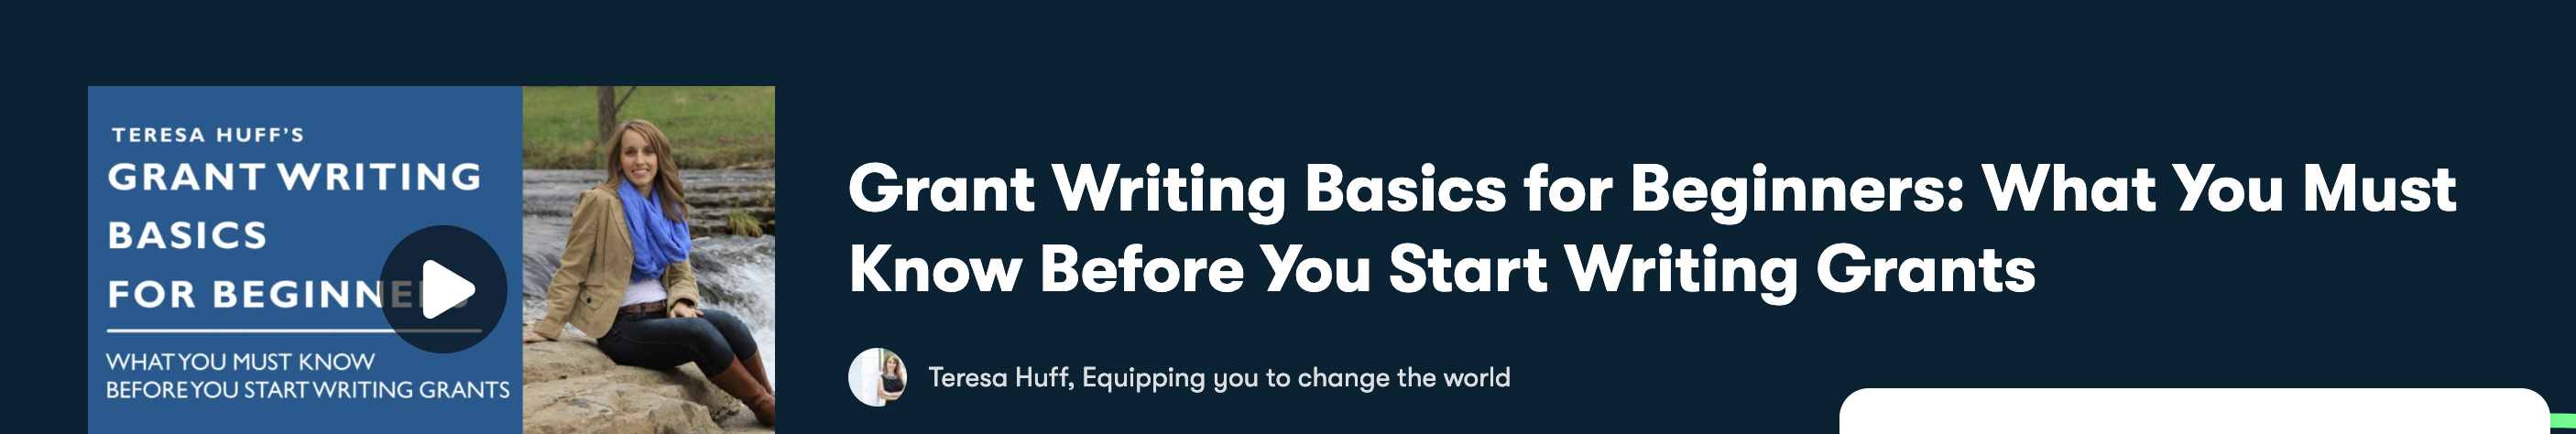 Grant Writing Basics for Beginners (Skillshare)